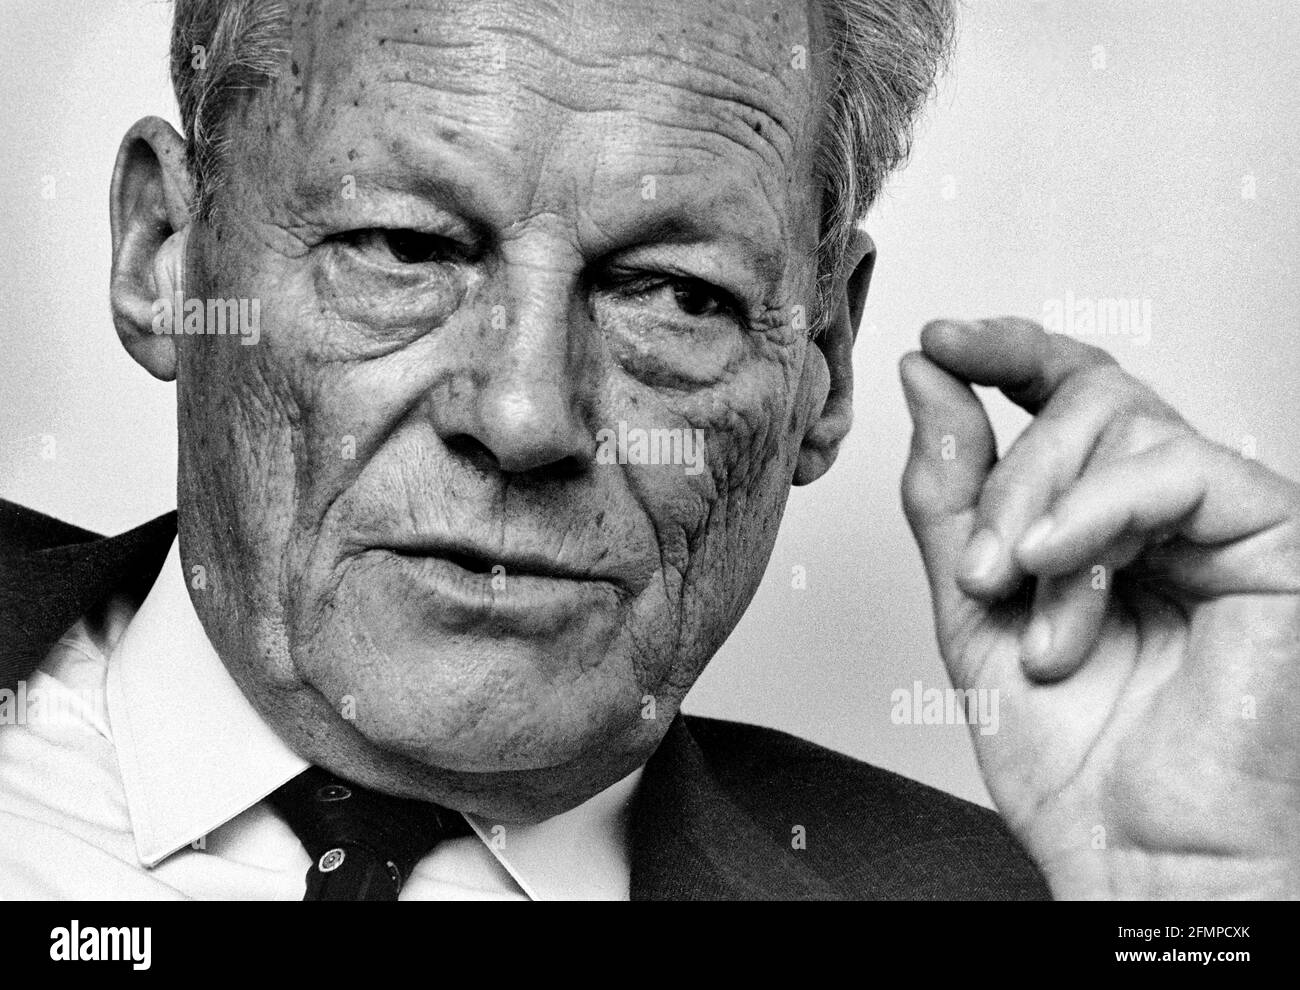 Gestikulierend auf Willy Brandt, den Präsidenten der Sozialistischen Internationale, während eines Interviews in seinem Büro in Bonn. 02.10.1985 - Christoph Keller Stockfoto